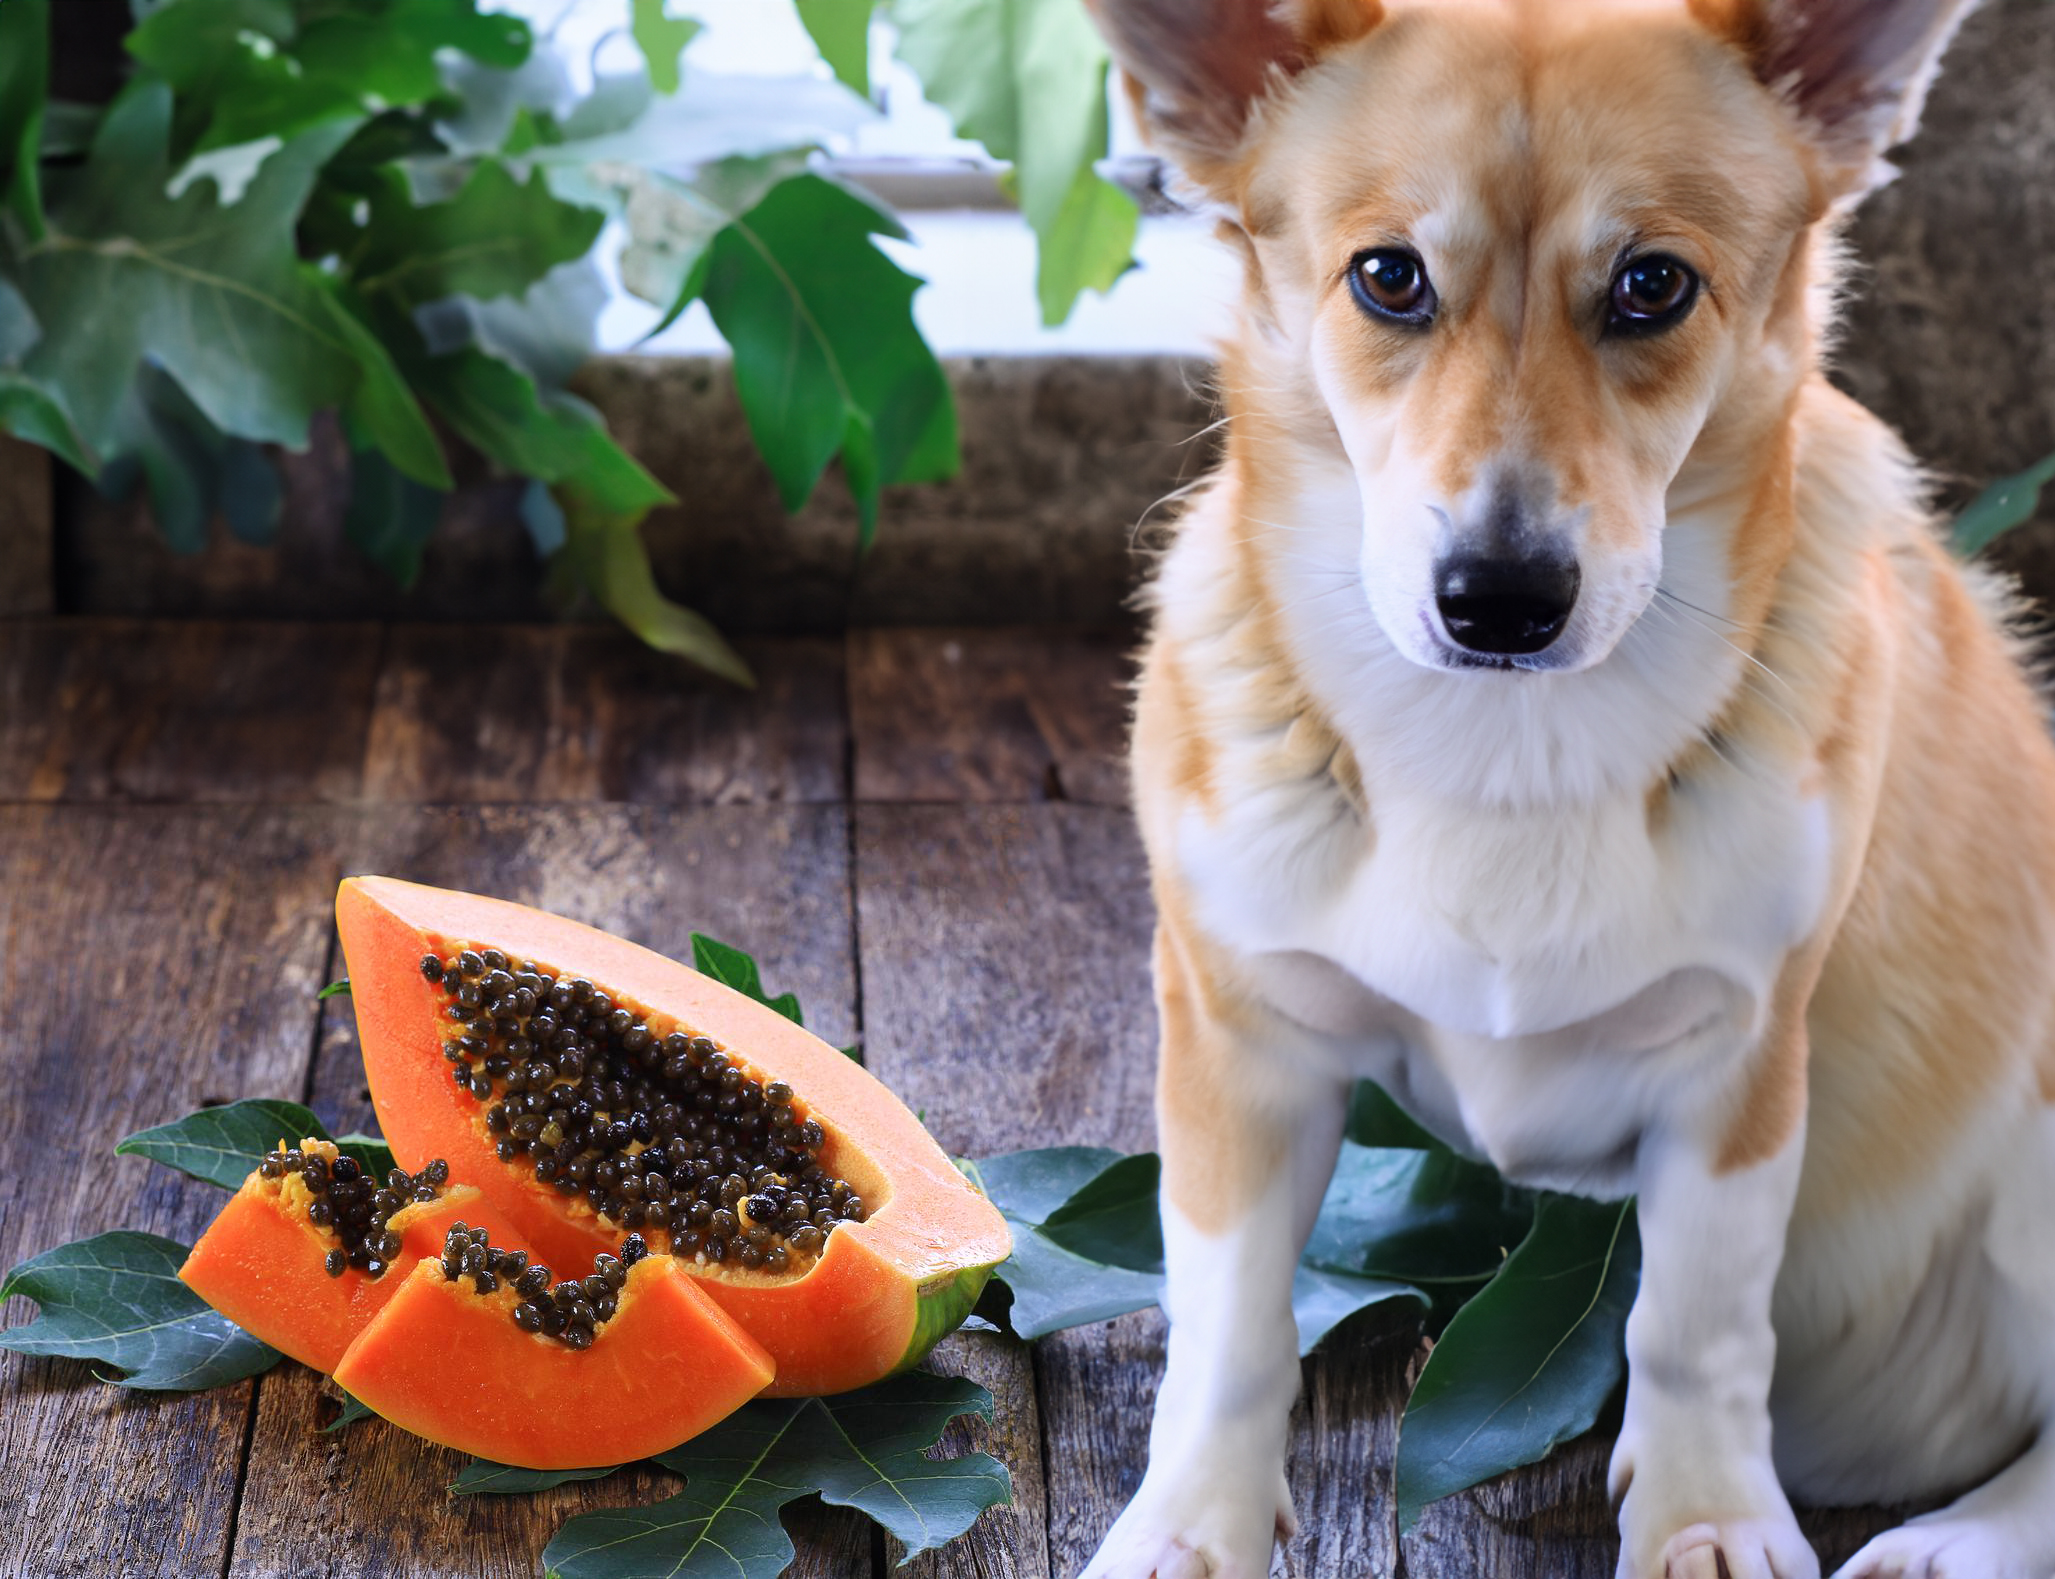 can dogs eat papaya